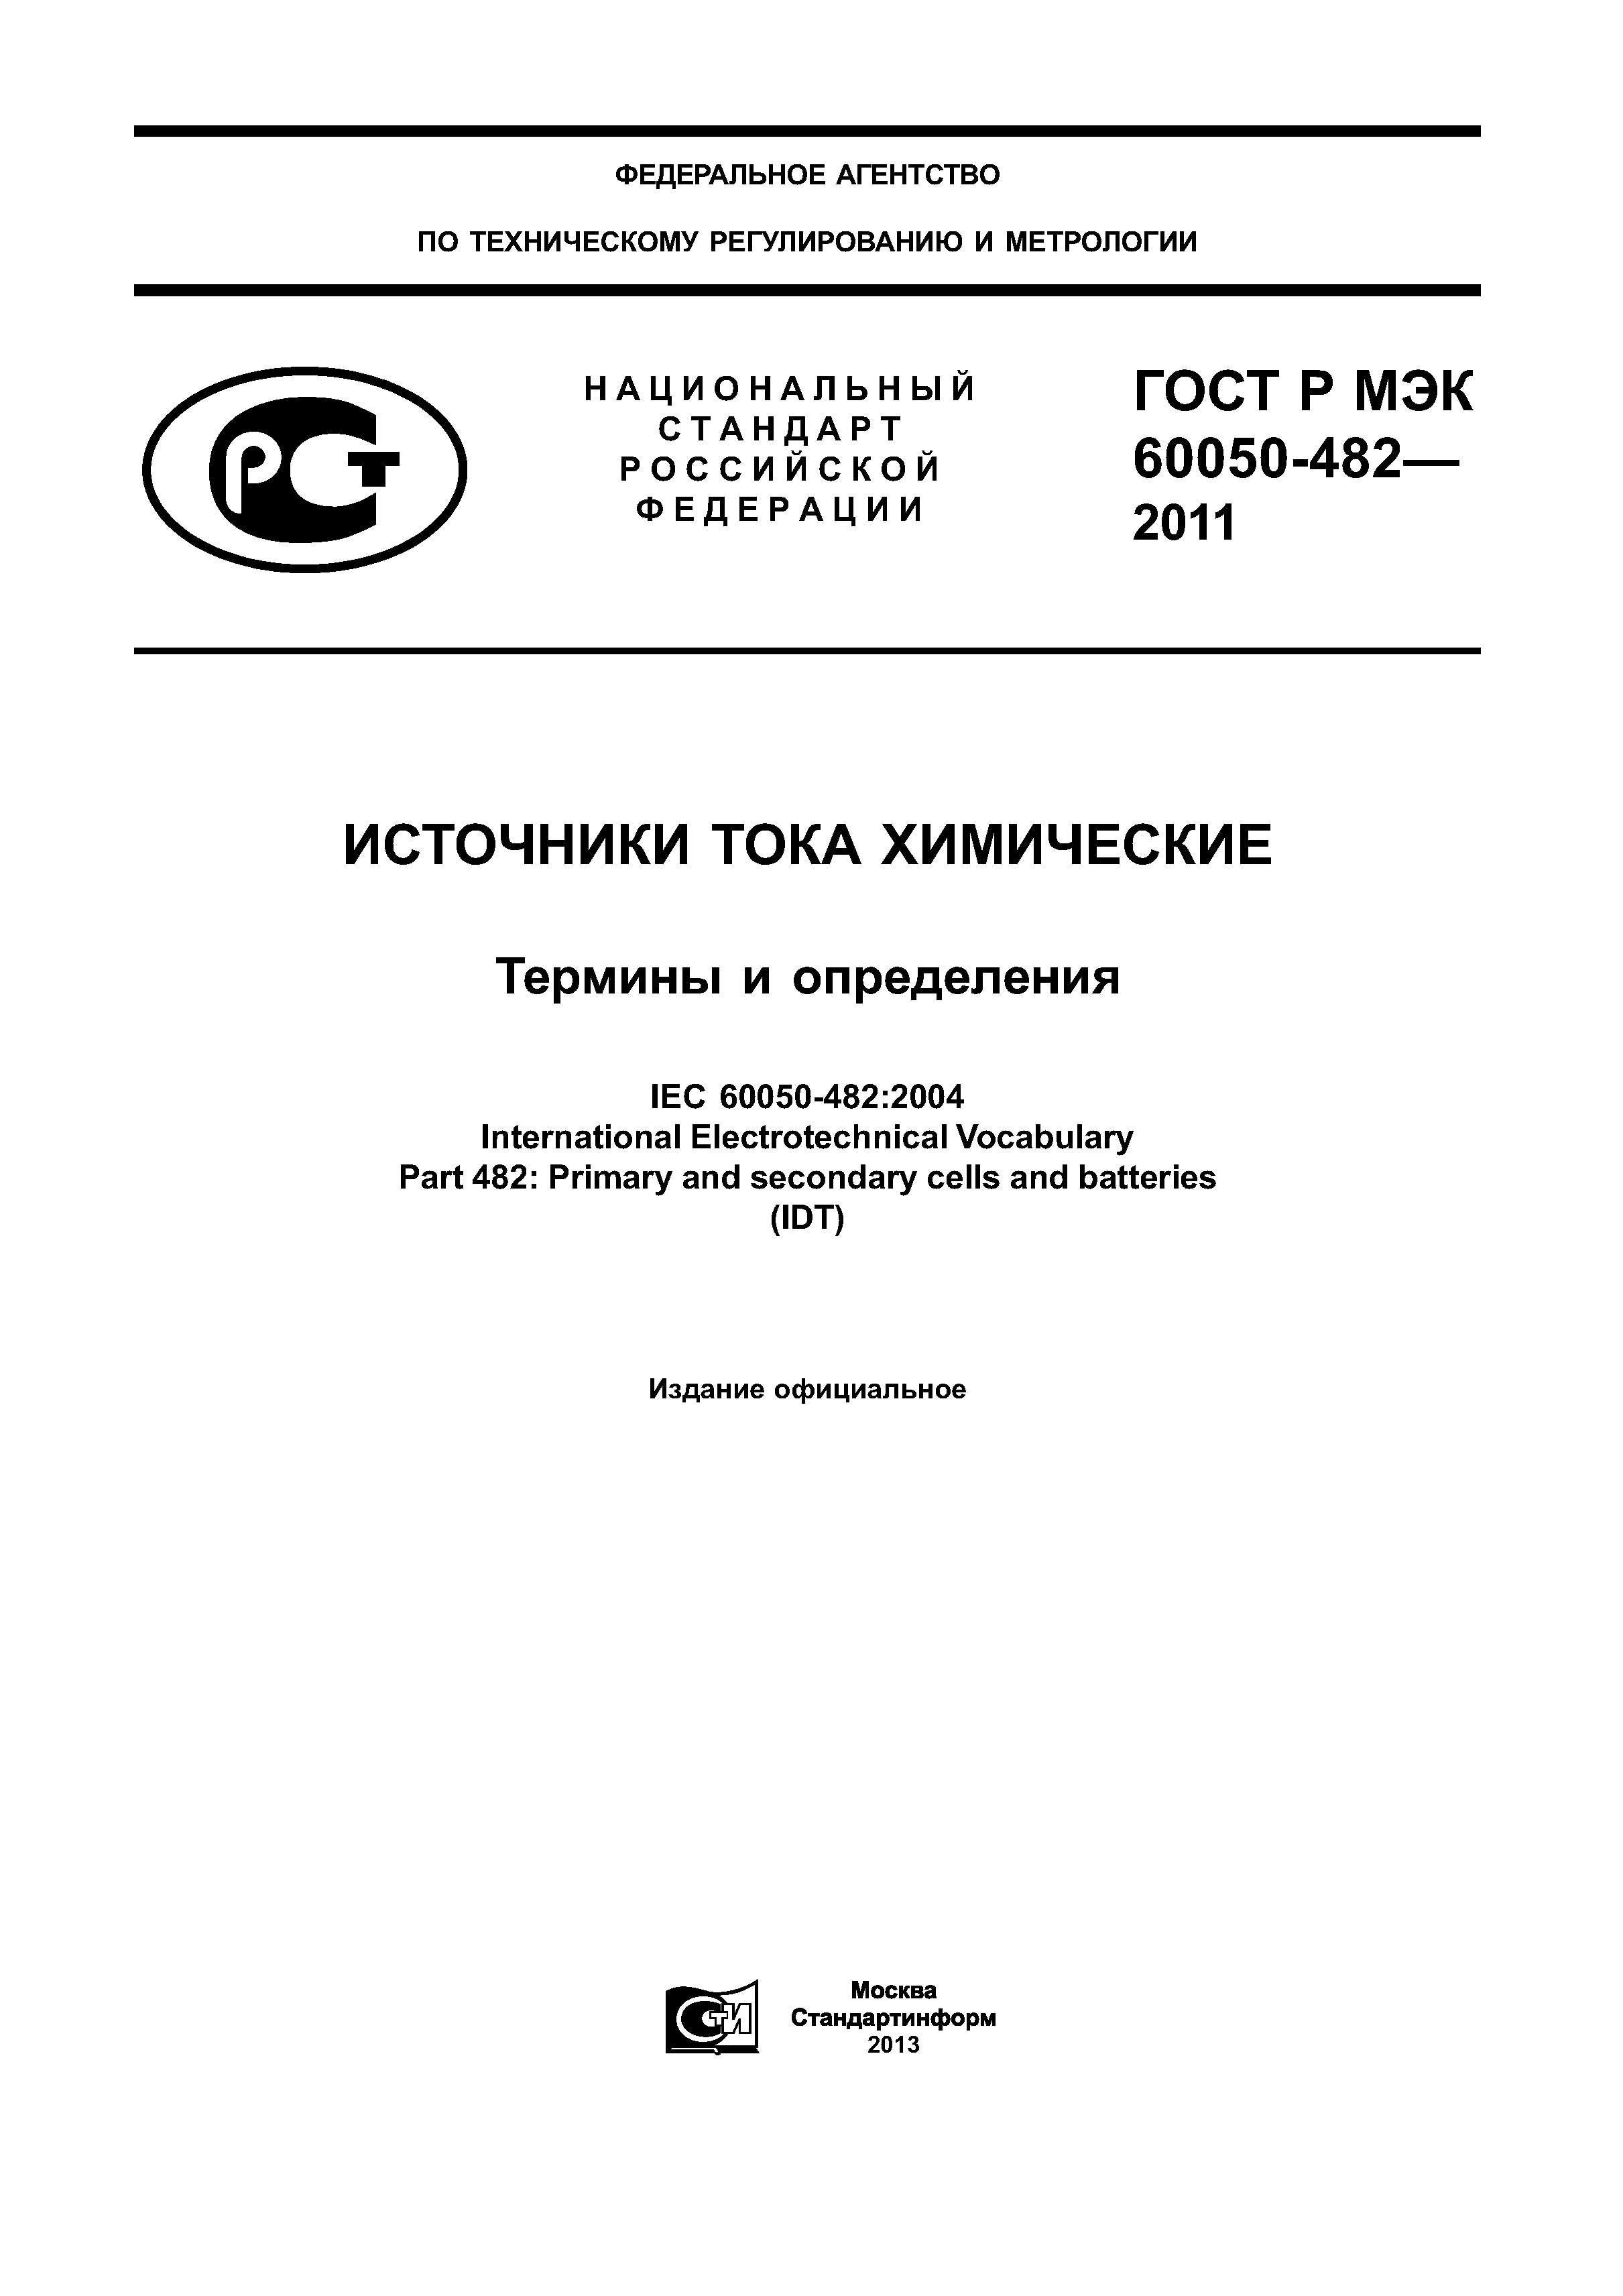 ГОСТ Р МЭК 60050-482-2011